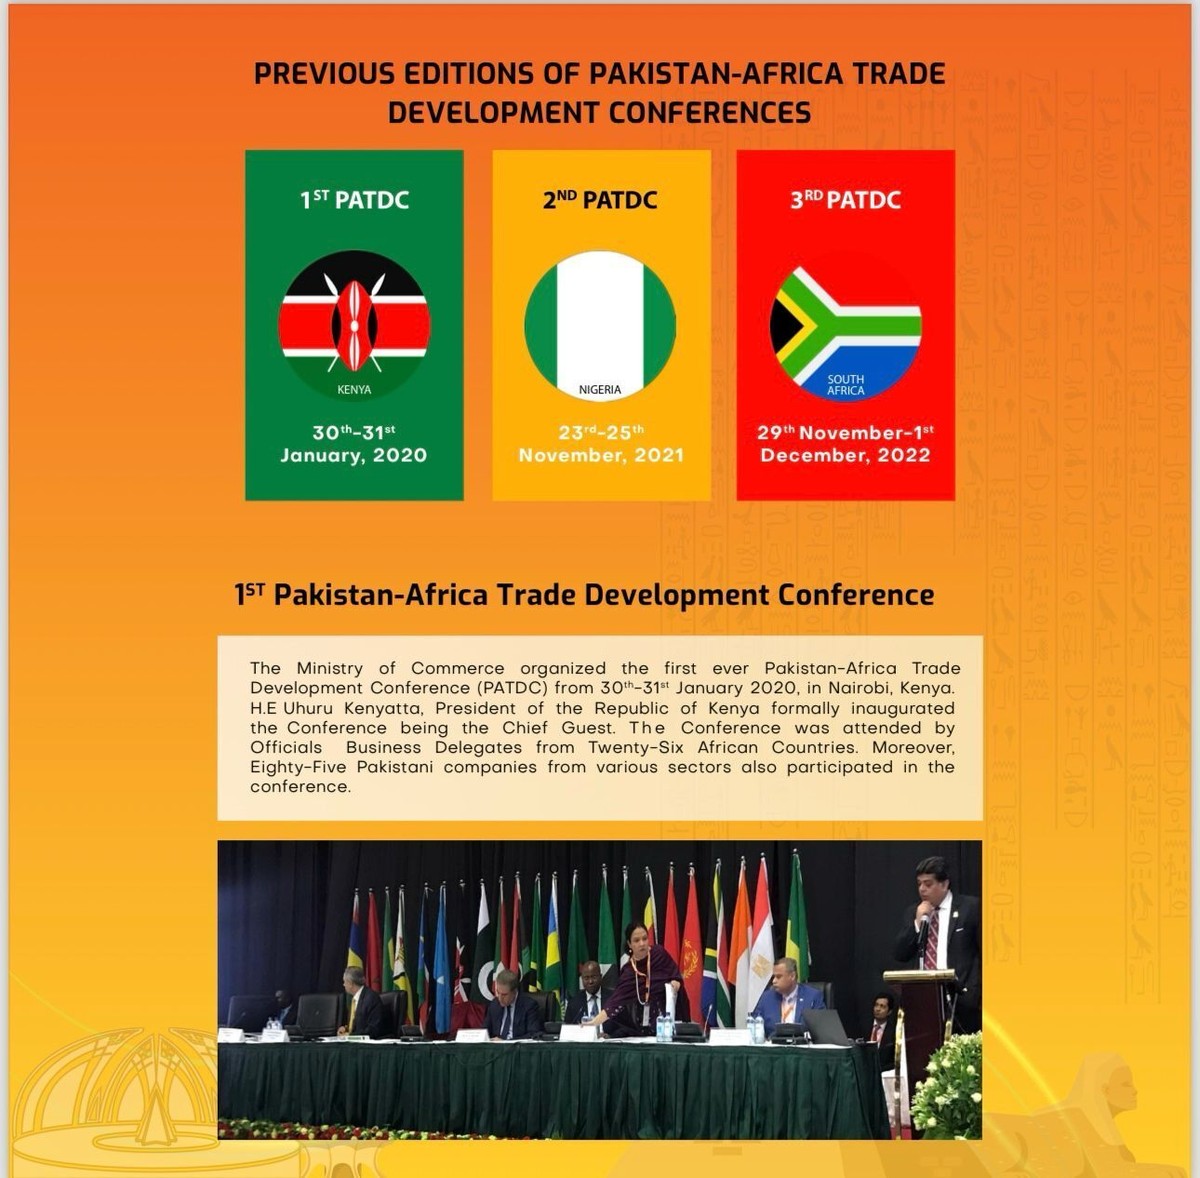 الحكومة الباكستانية تنظم المؤتمر الرابع لتنمية التجارة الباكستانية الأفريقية